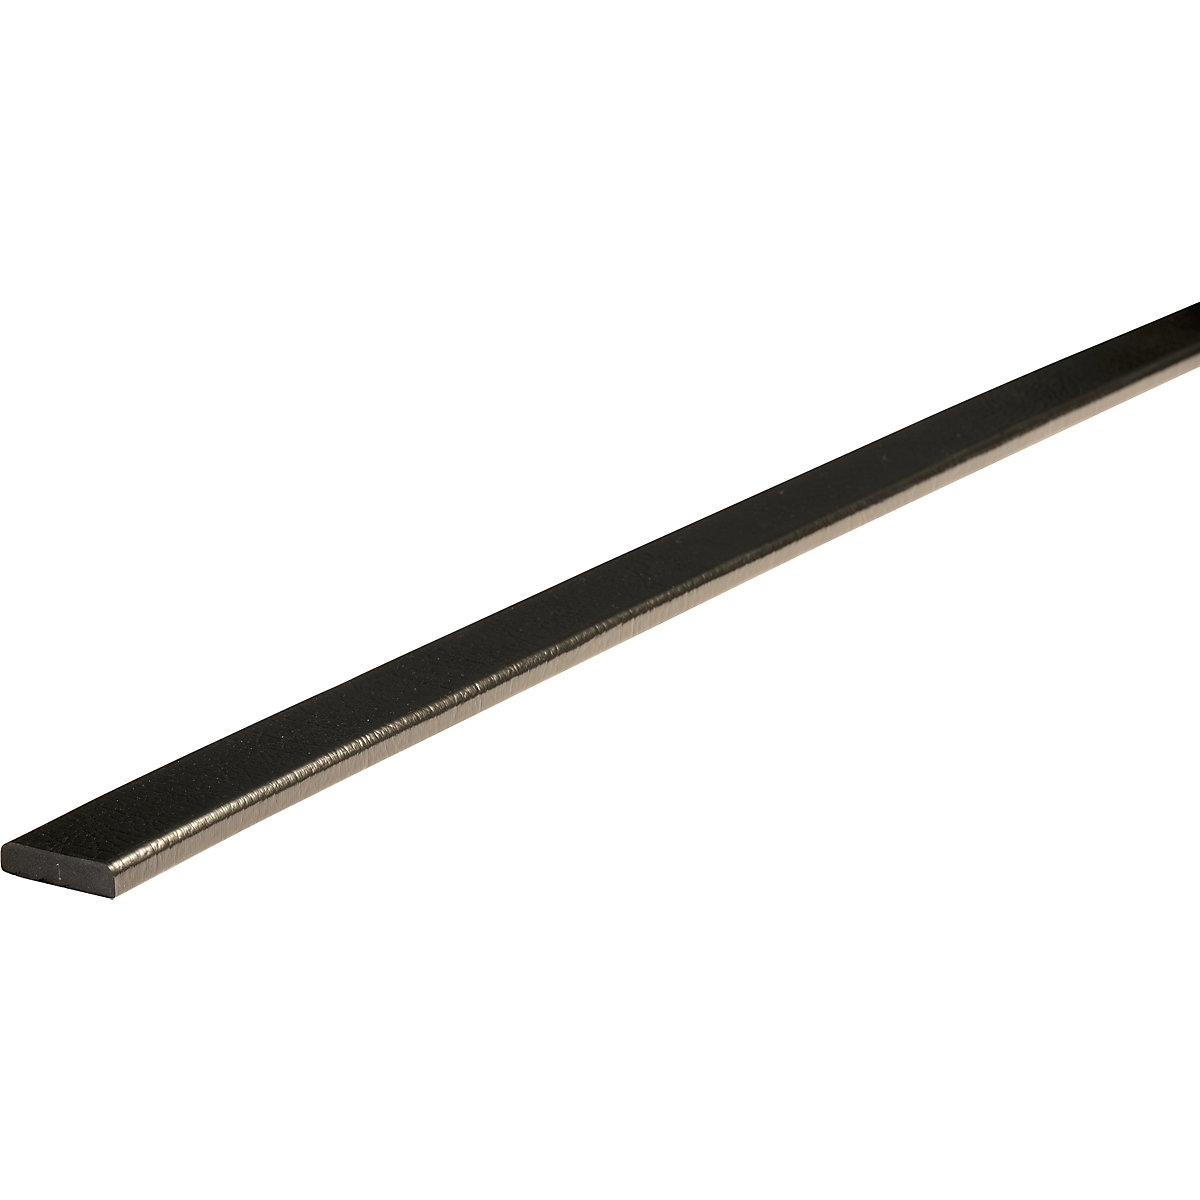 Protection des surfaces Knuffi® – SHG, type F, 1 rouleau de 50 m, noir